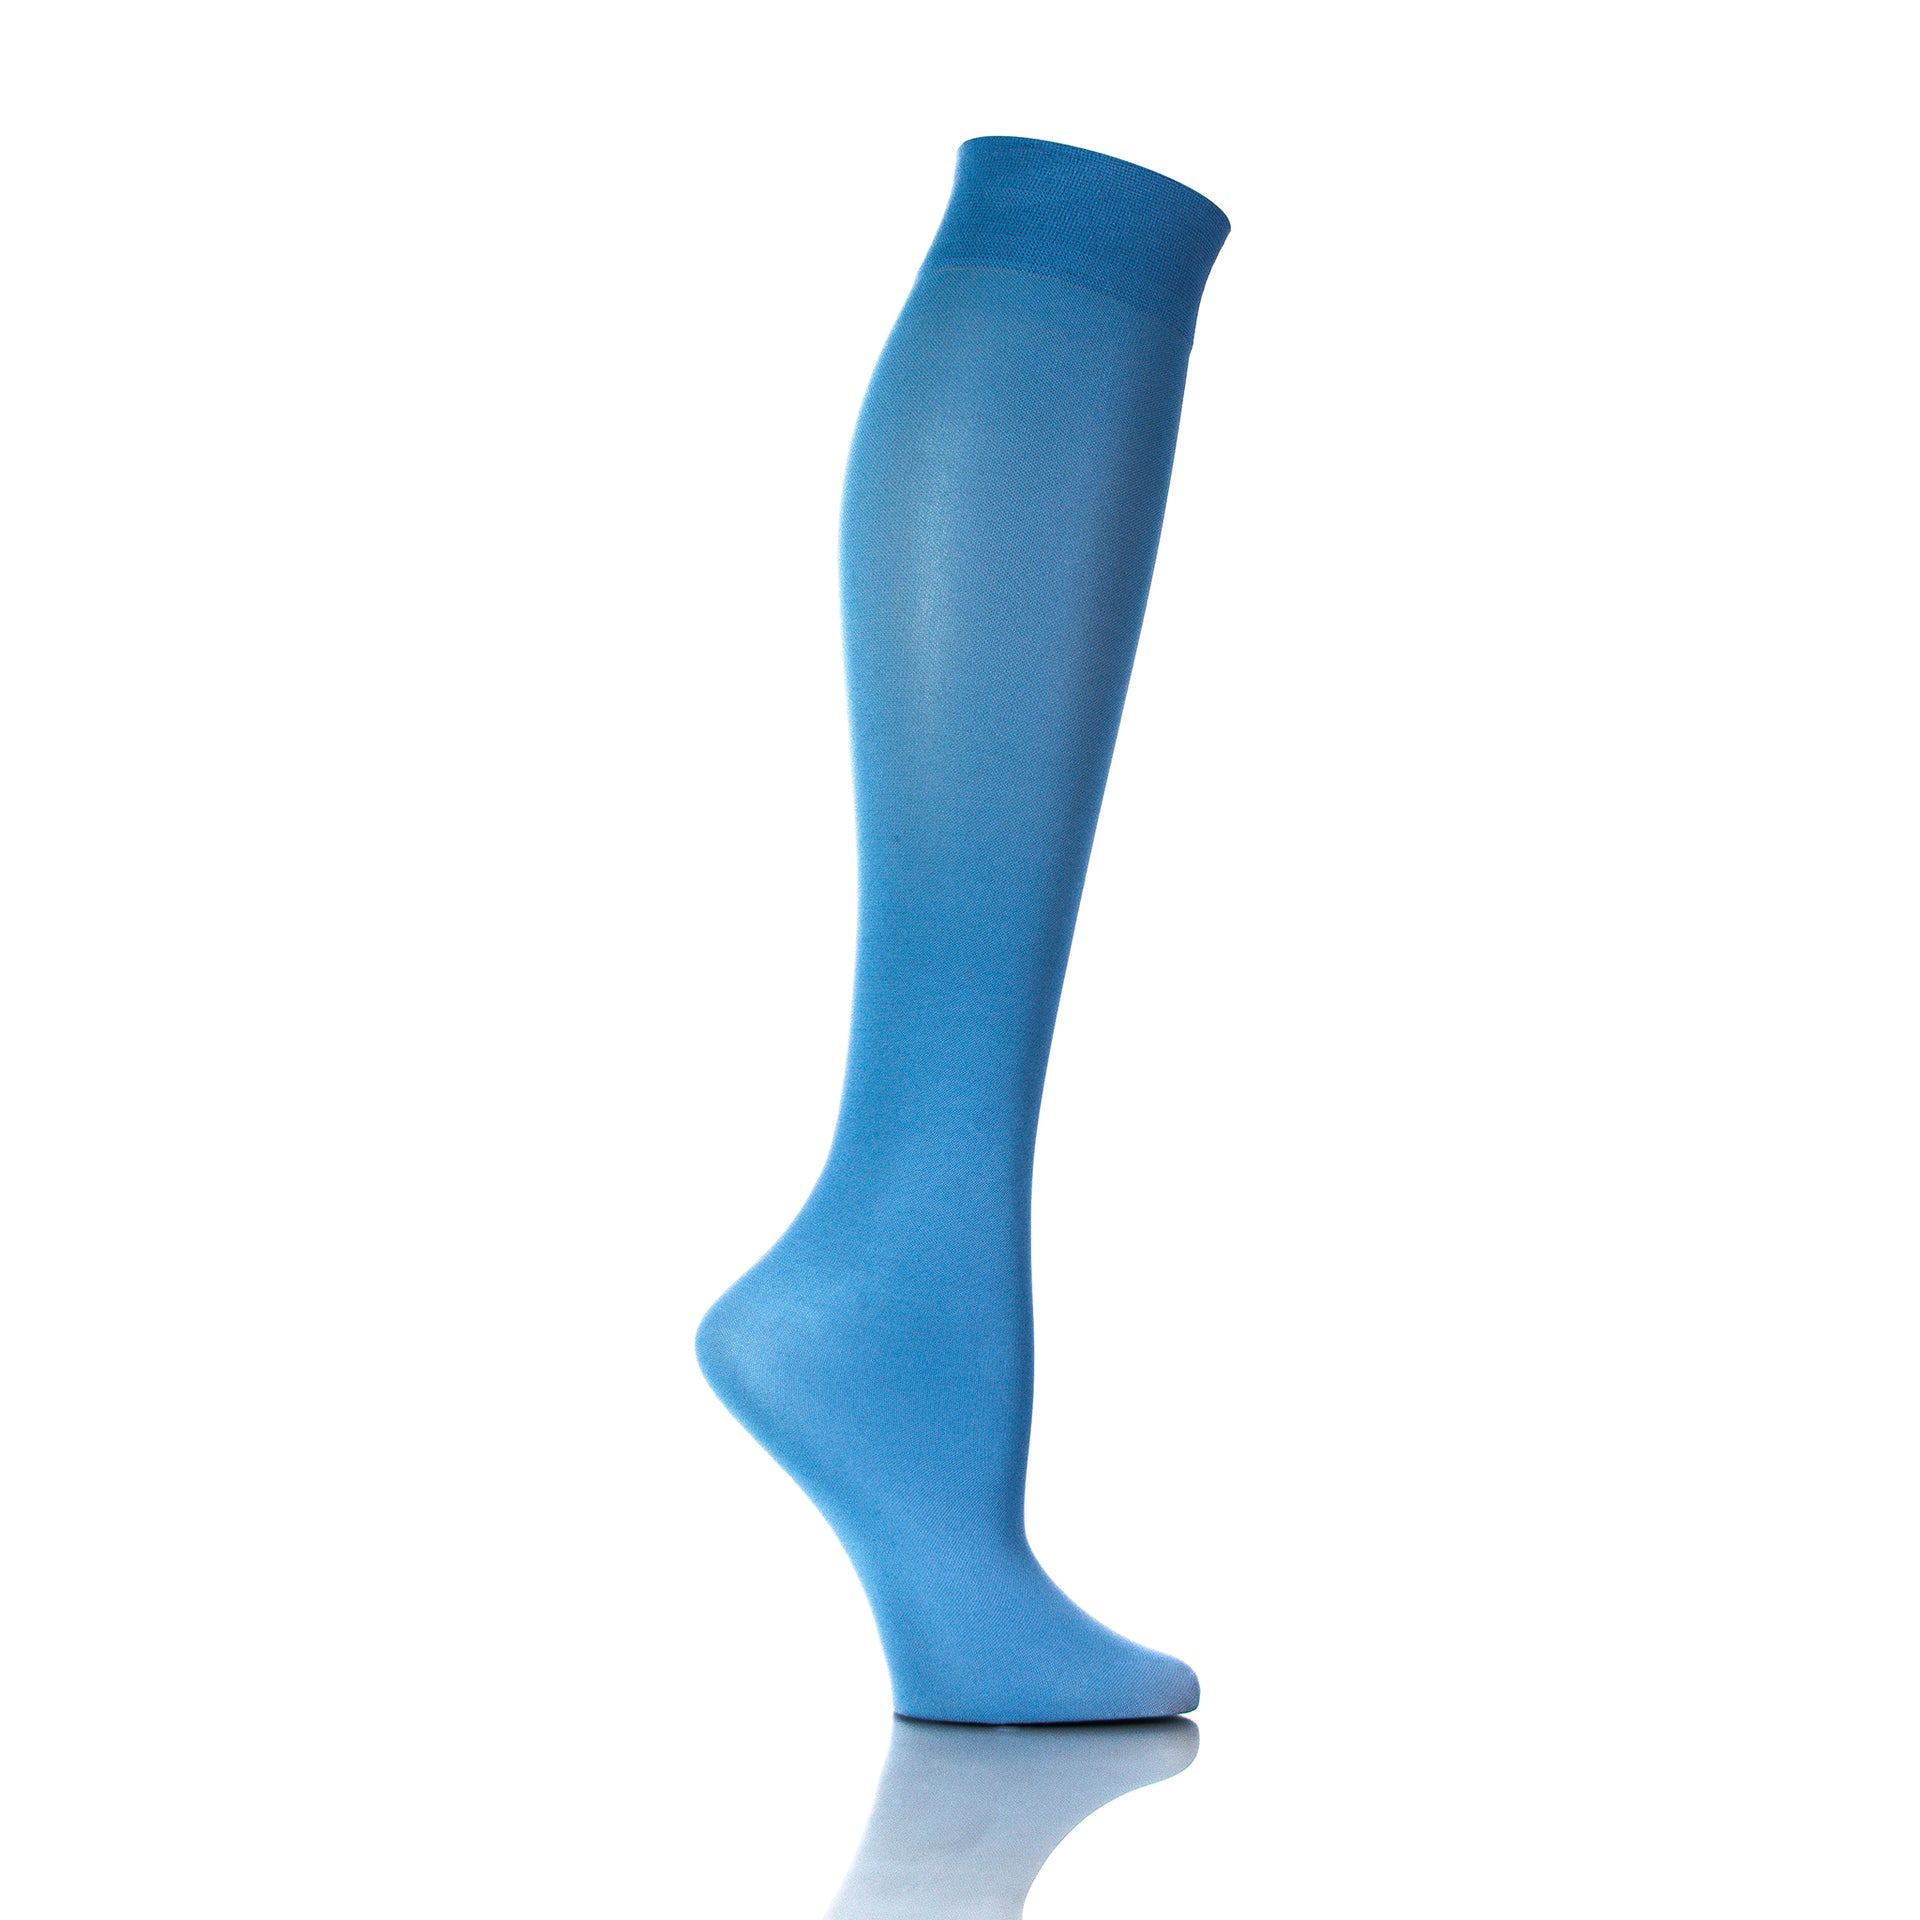 Bas de contention bleu ciel 20-30 mmHg pour femme, vue intérieure de la jambe, confort quotidien - Softmedi